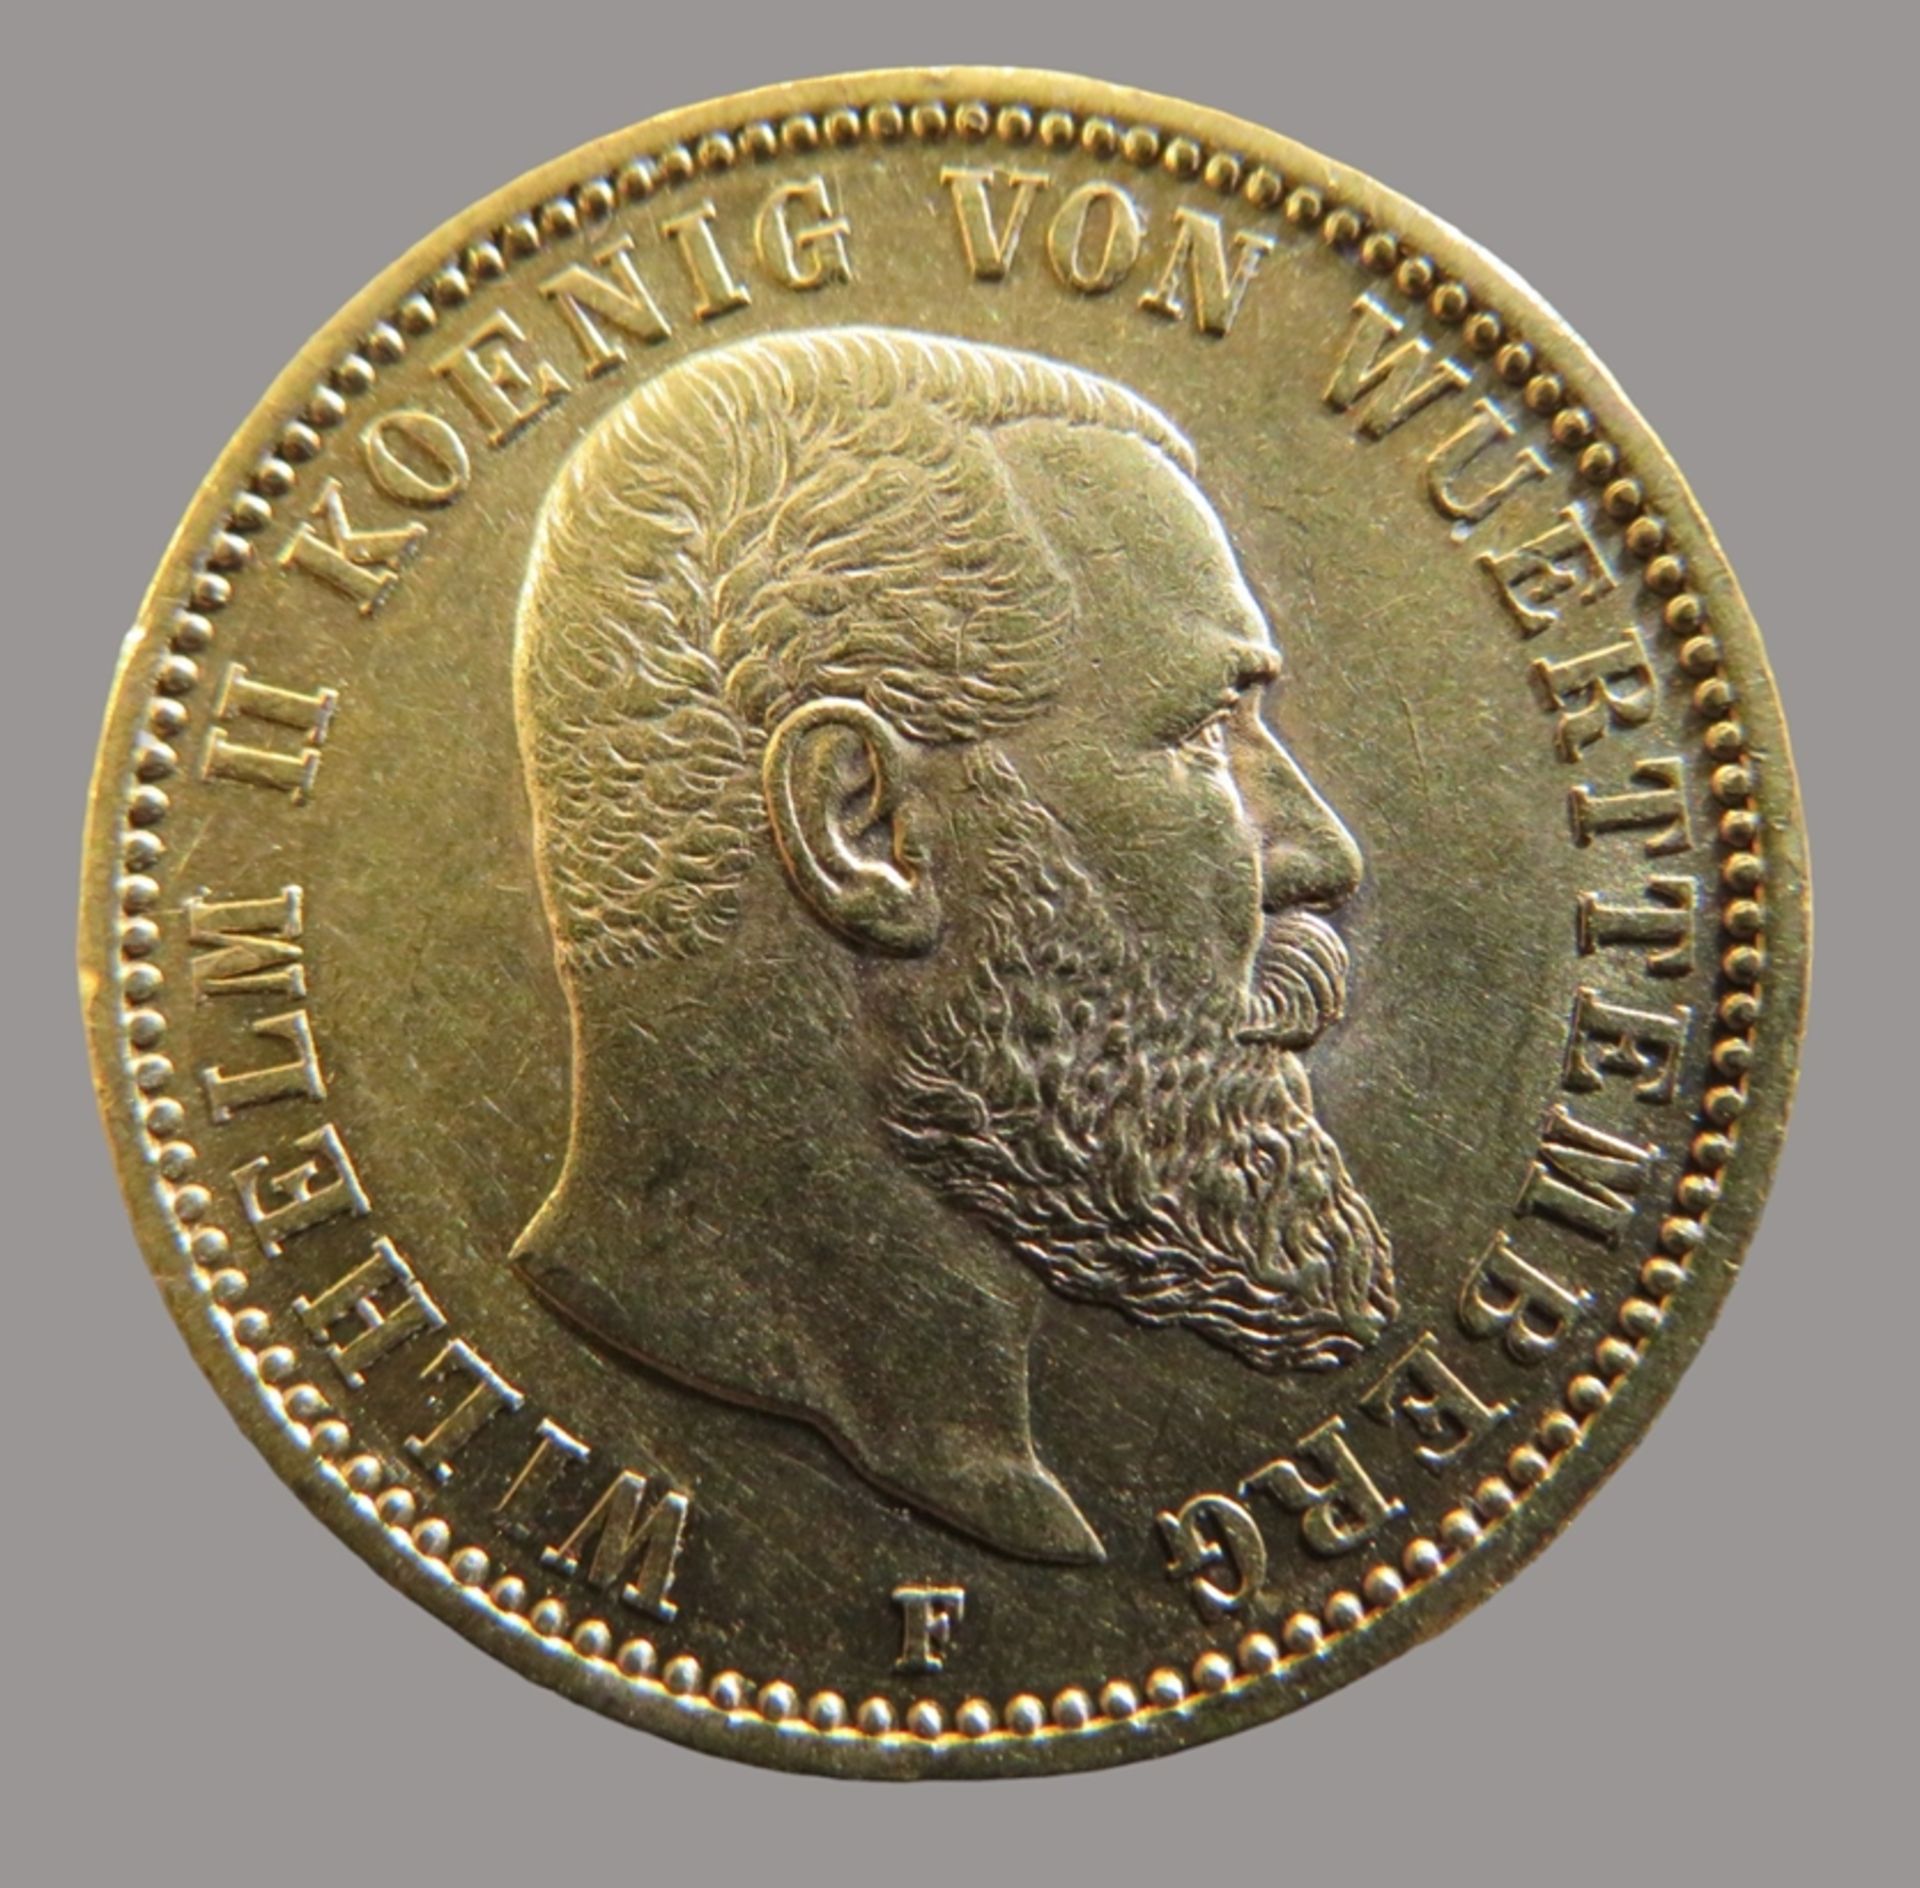 Goldmünze, 20 Mark, König Wilhelm II. von Württemberg, 1894F, Gold 900/000, 7,96 g, J 296, Erhaltun